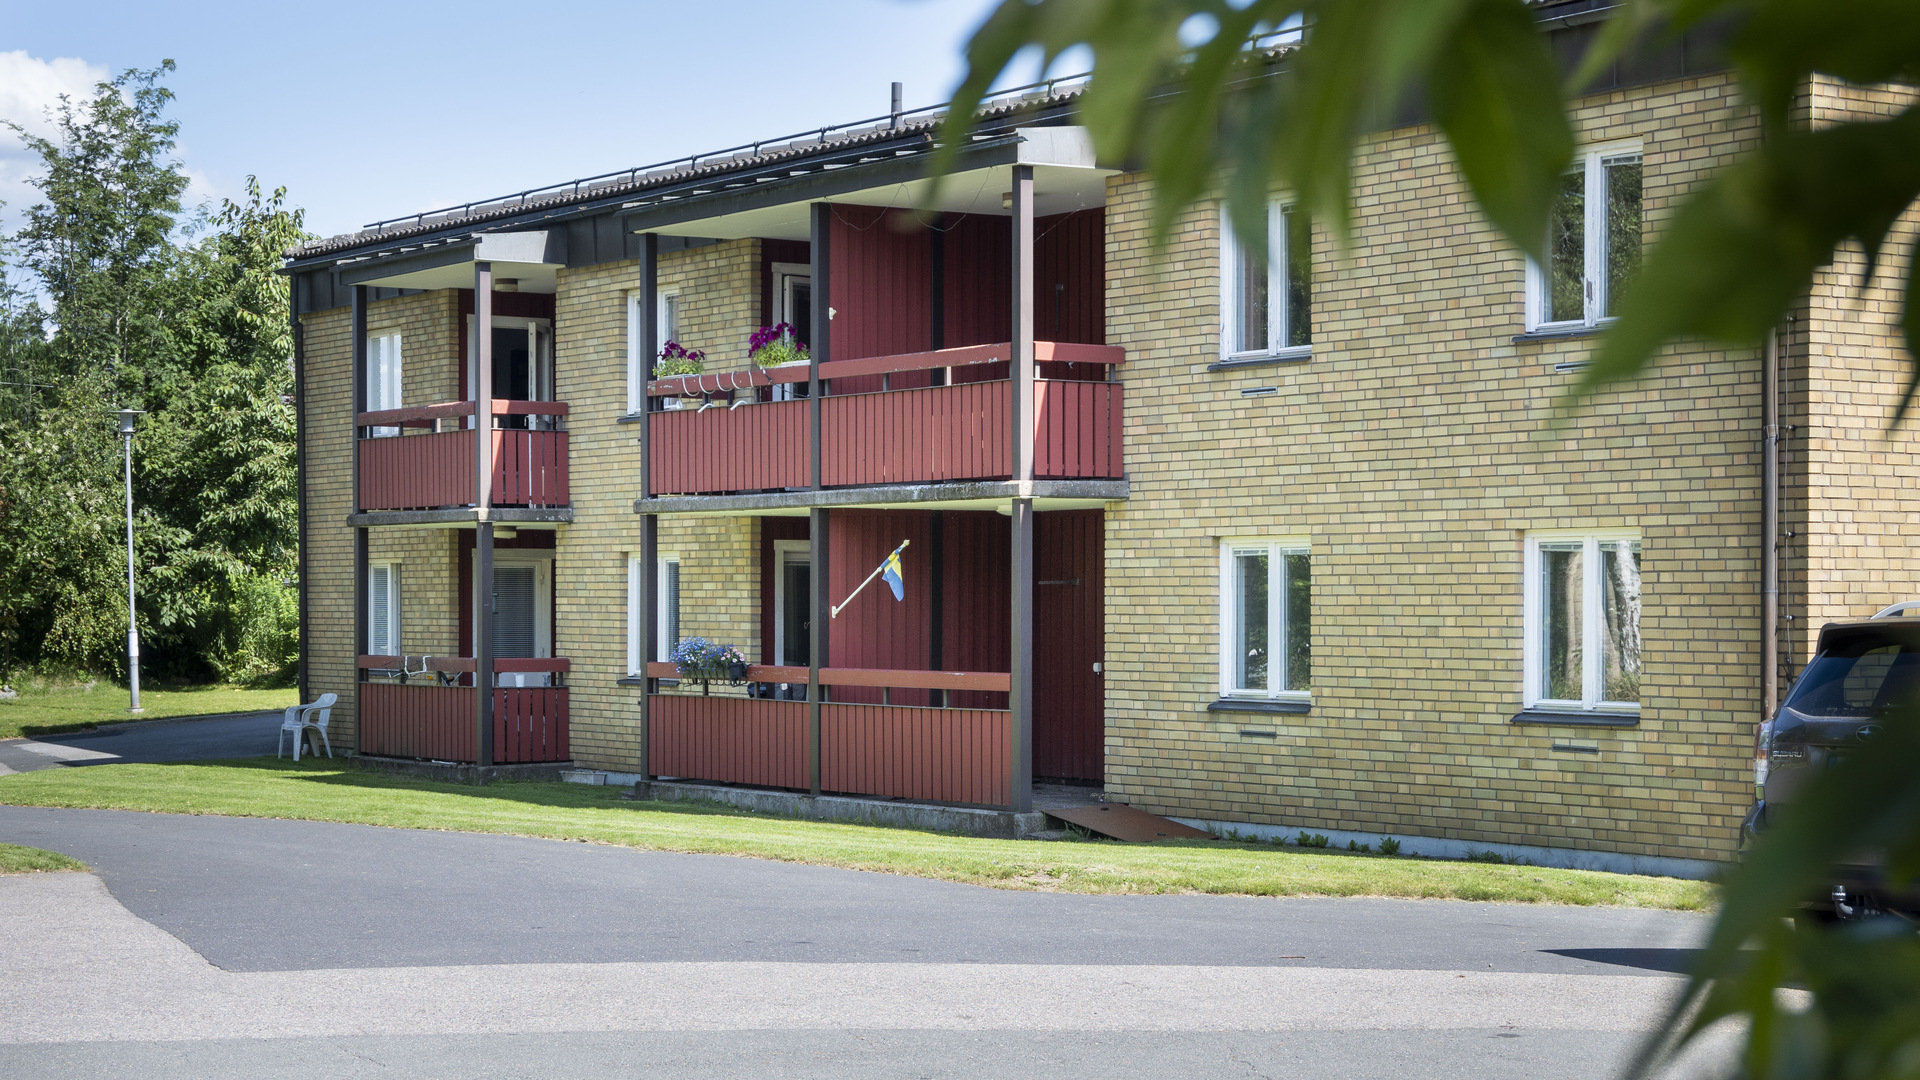 Seniorboende på Ringgården, en tegelbyggnad med fyra lägenheter, balkong eller uteplats.